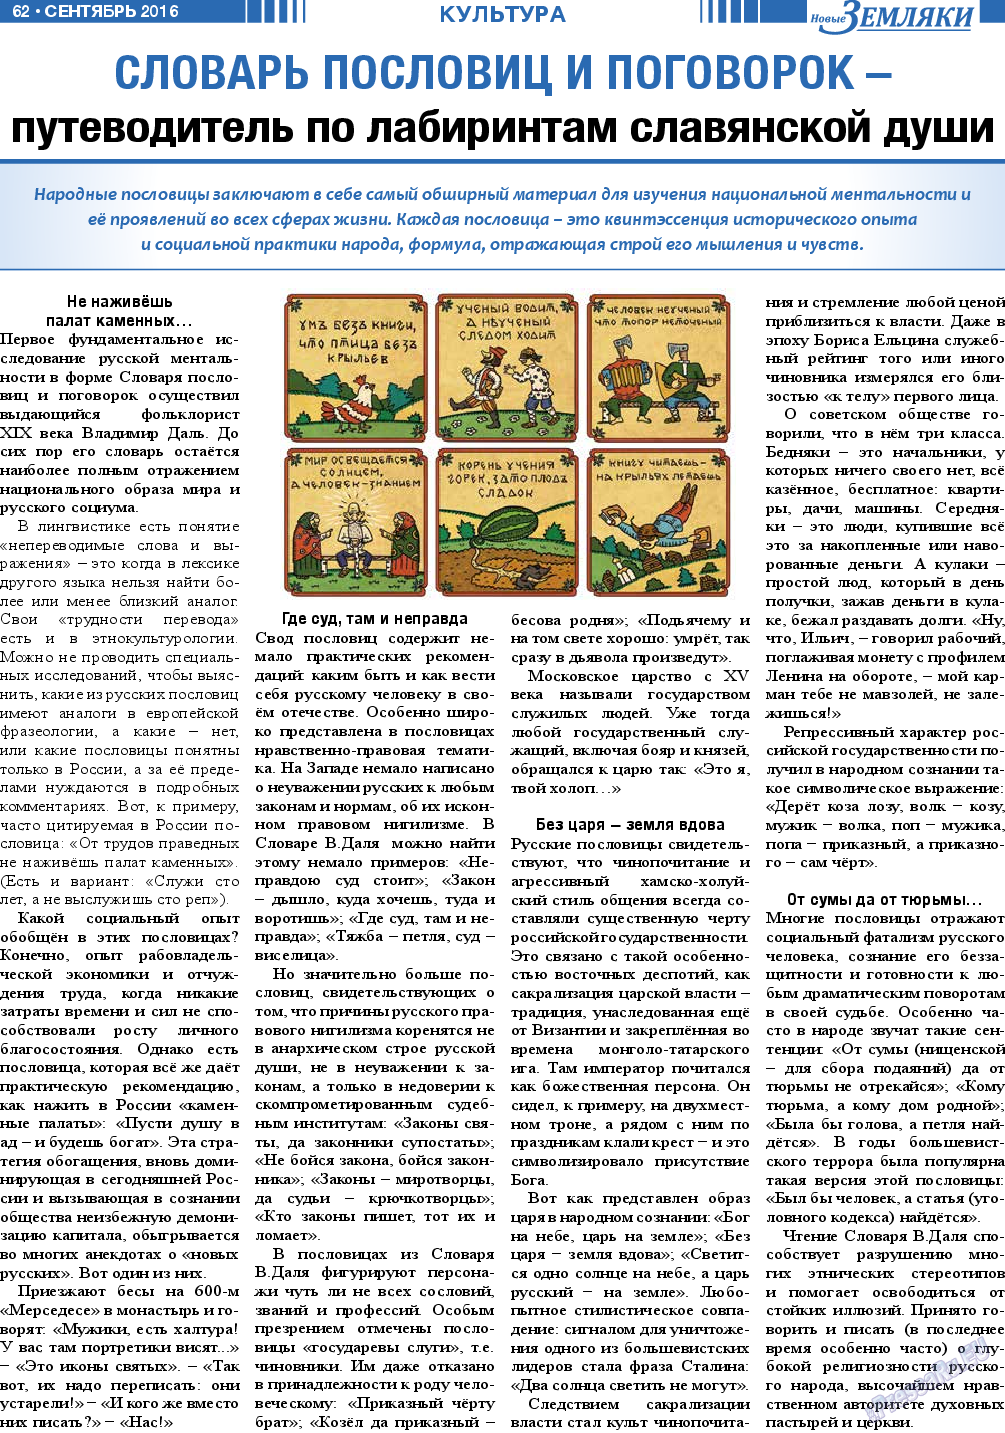 Новые Земляки (газета). 2016 год, номер 9, стр. 62